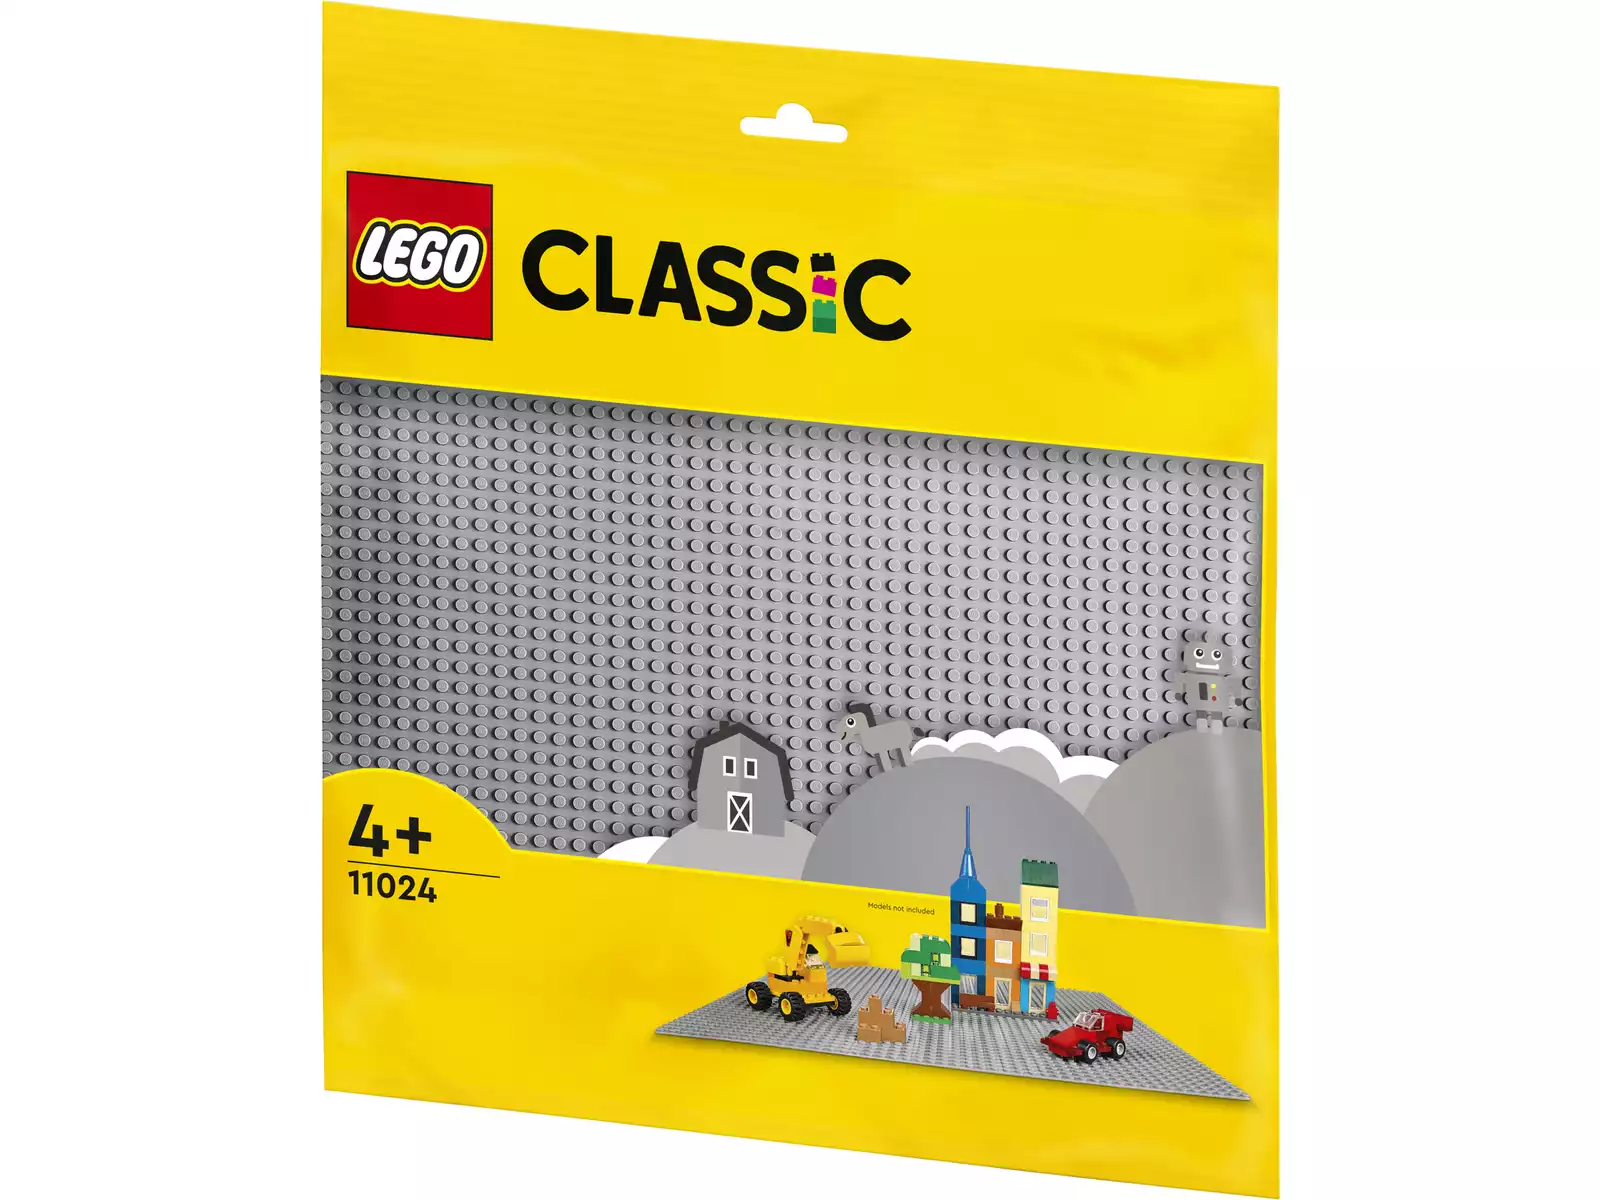 Acheter Lego Classic Briques et Fonctions 11019 - Juguetilandia